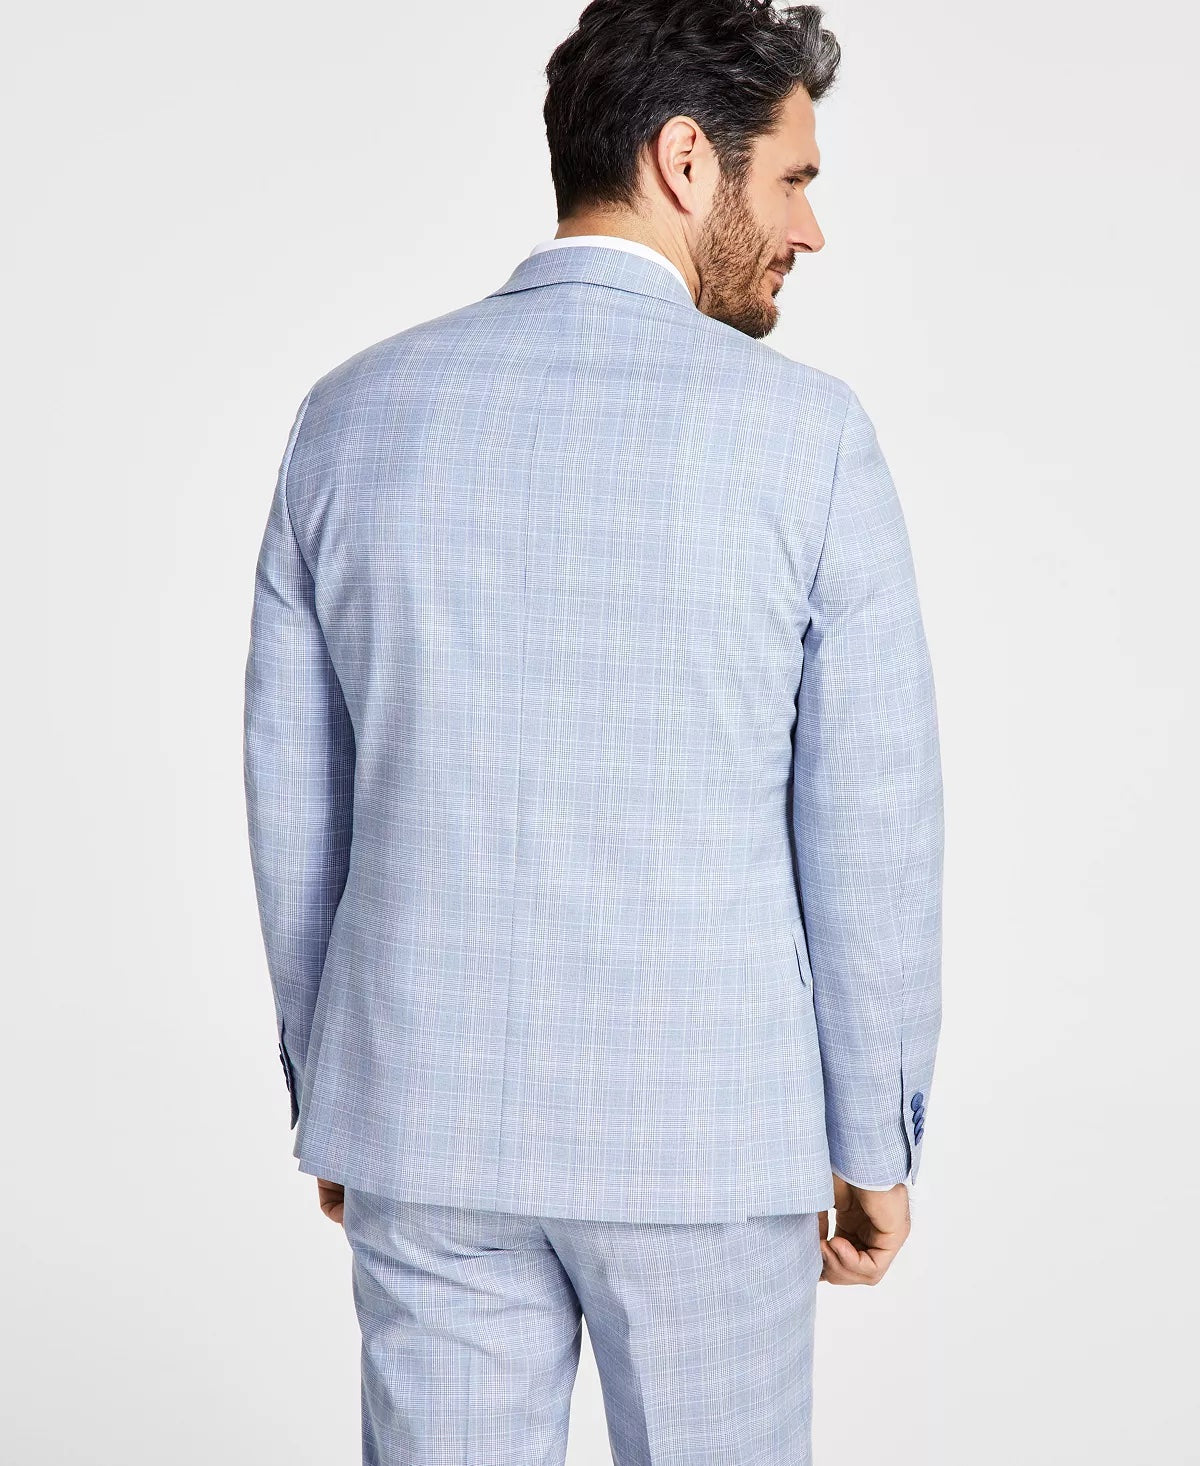 ALFANI Men's Suit Jacket Blue Plaid 46L Slim-Fit Stretch